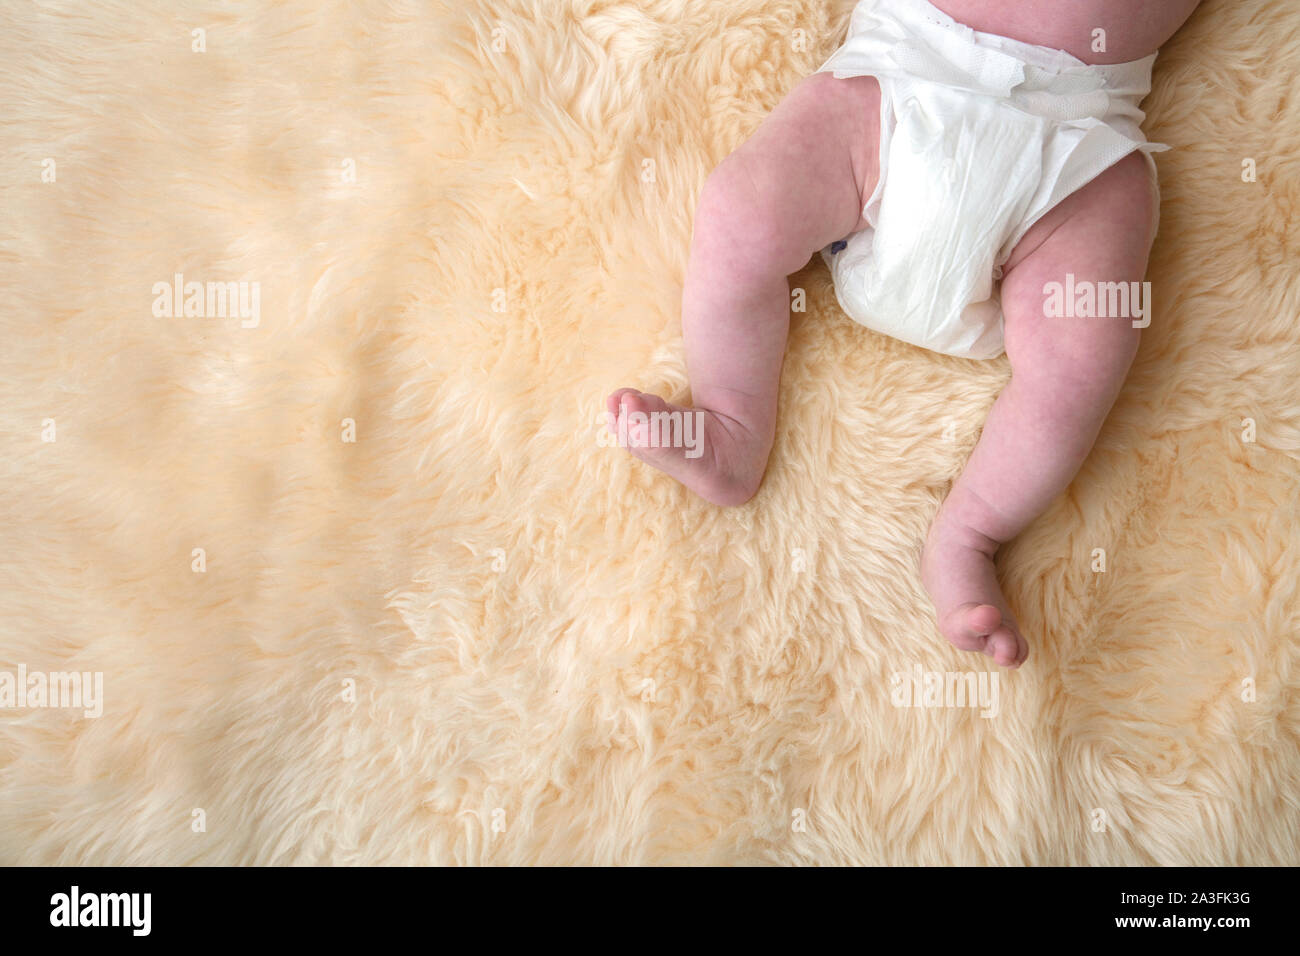 Neonato gambe con pannolino bianco, pannolino su un sfondo di pelliccia. Foto Stock